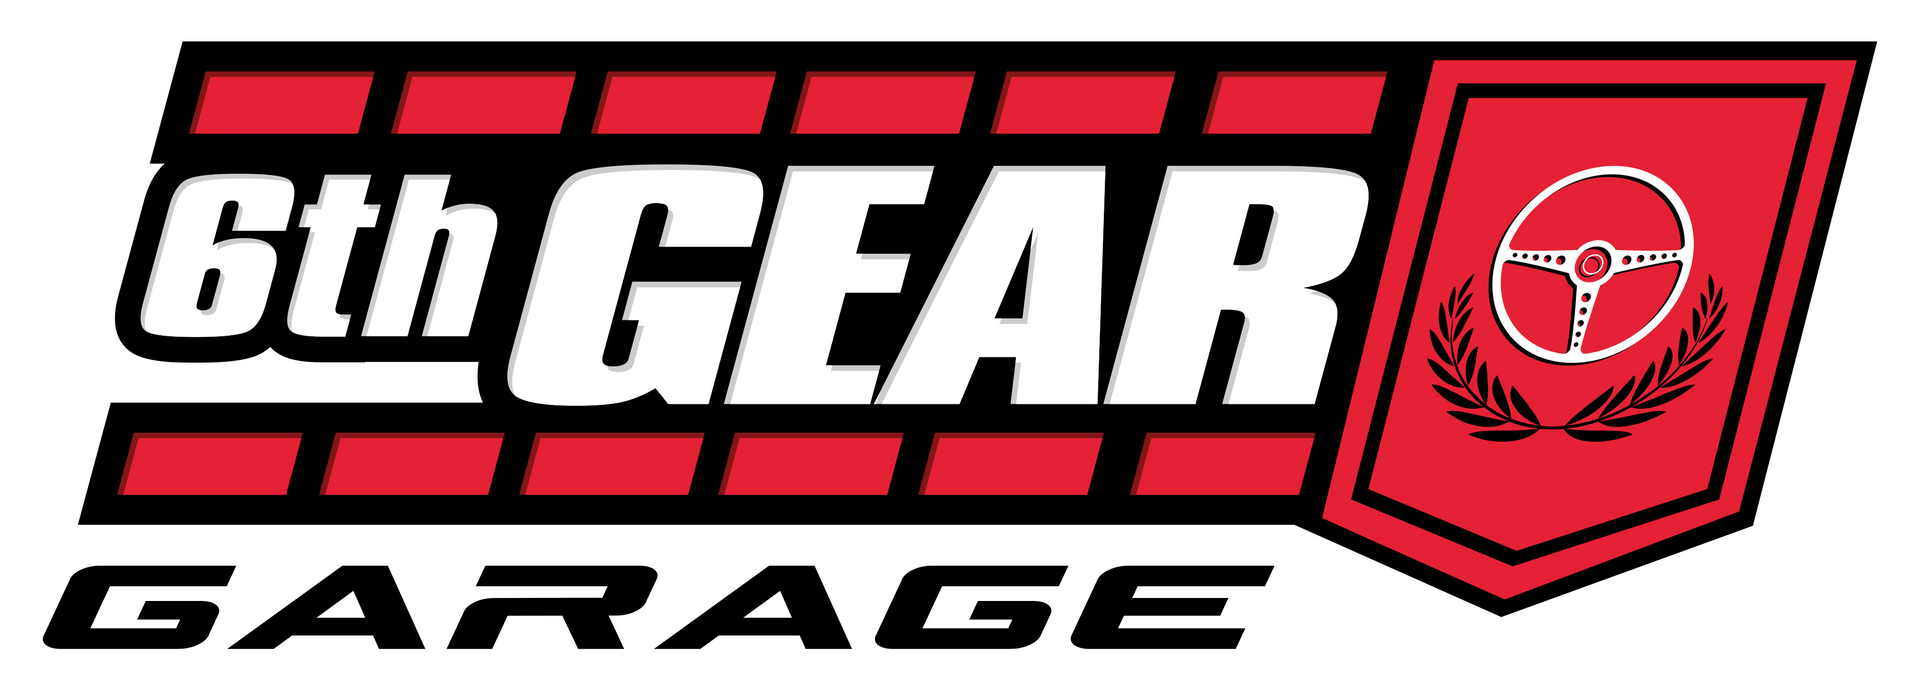 6th Gear Garage Logo